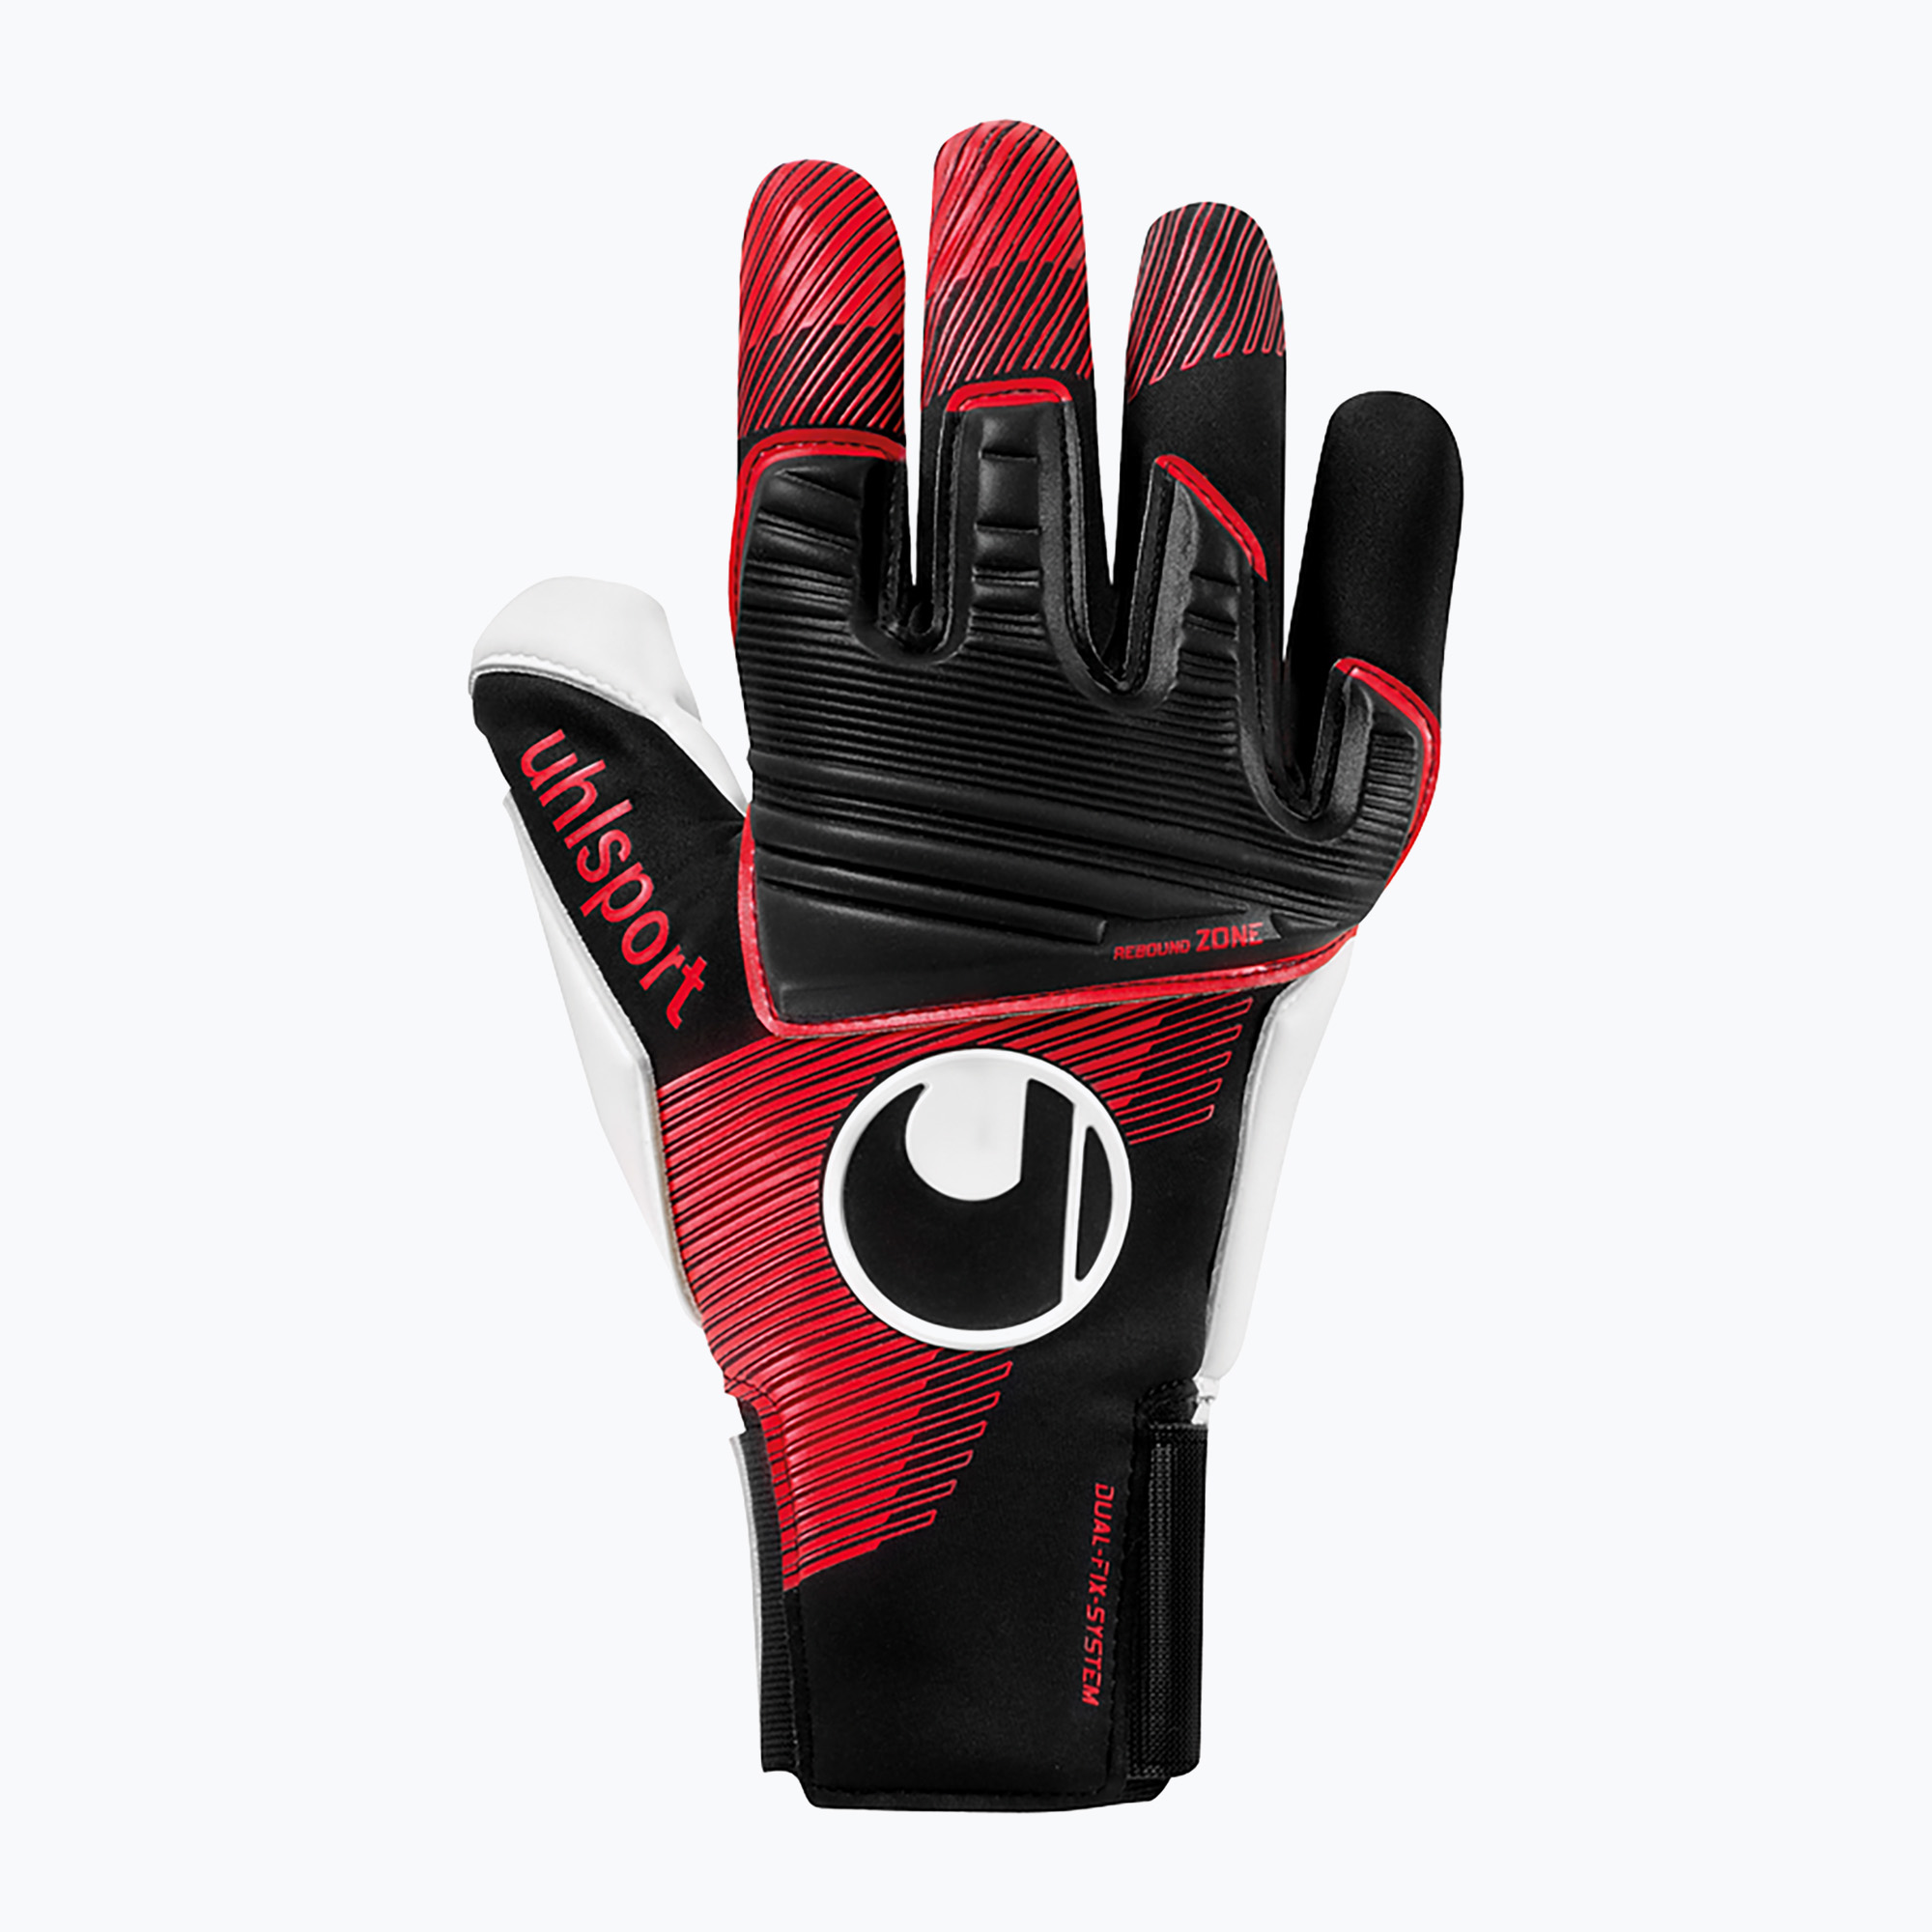 Mănuși de portar pentru copii uhlsport Powerline Absolutgrip negru/roșu/alb